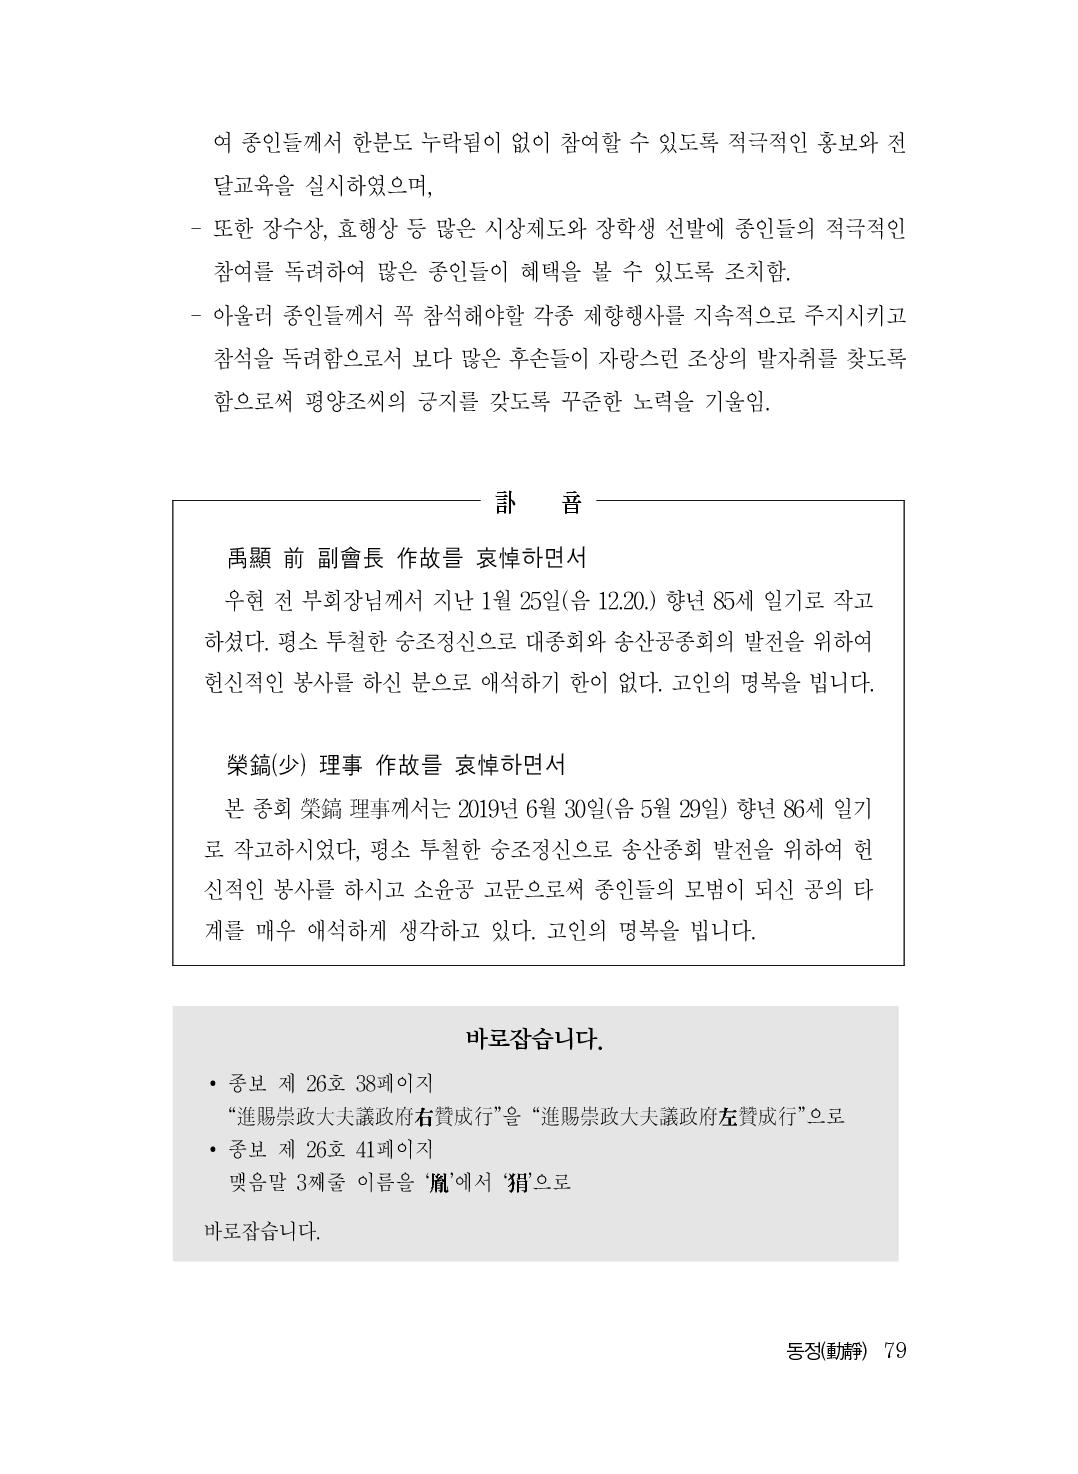 (전체) 송산종보(27호)(최종)_80.jpg